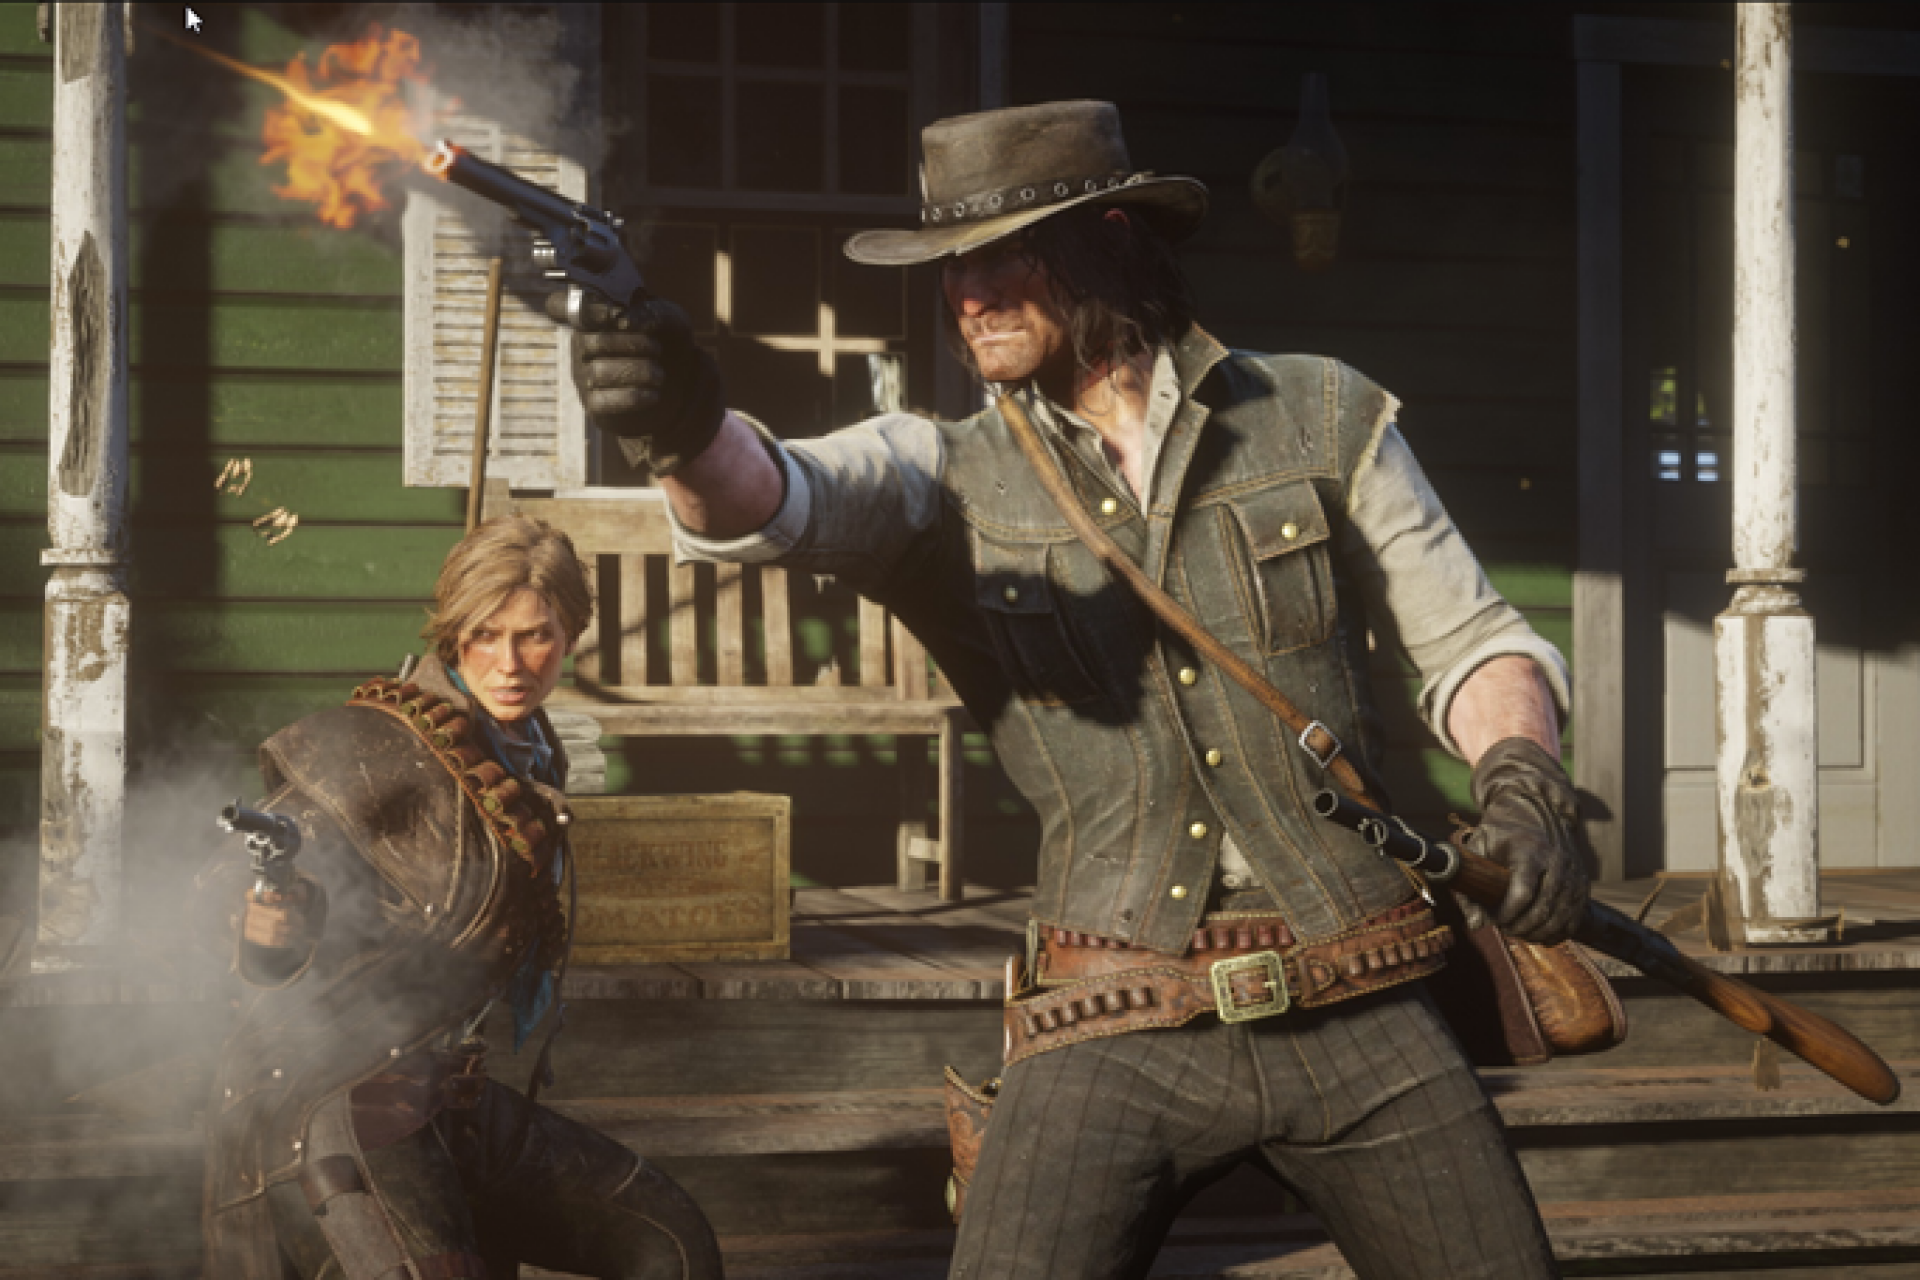 Man wearing cowboy hat fires gun, female beside him holds smoking gun